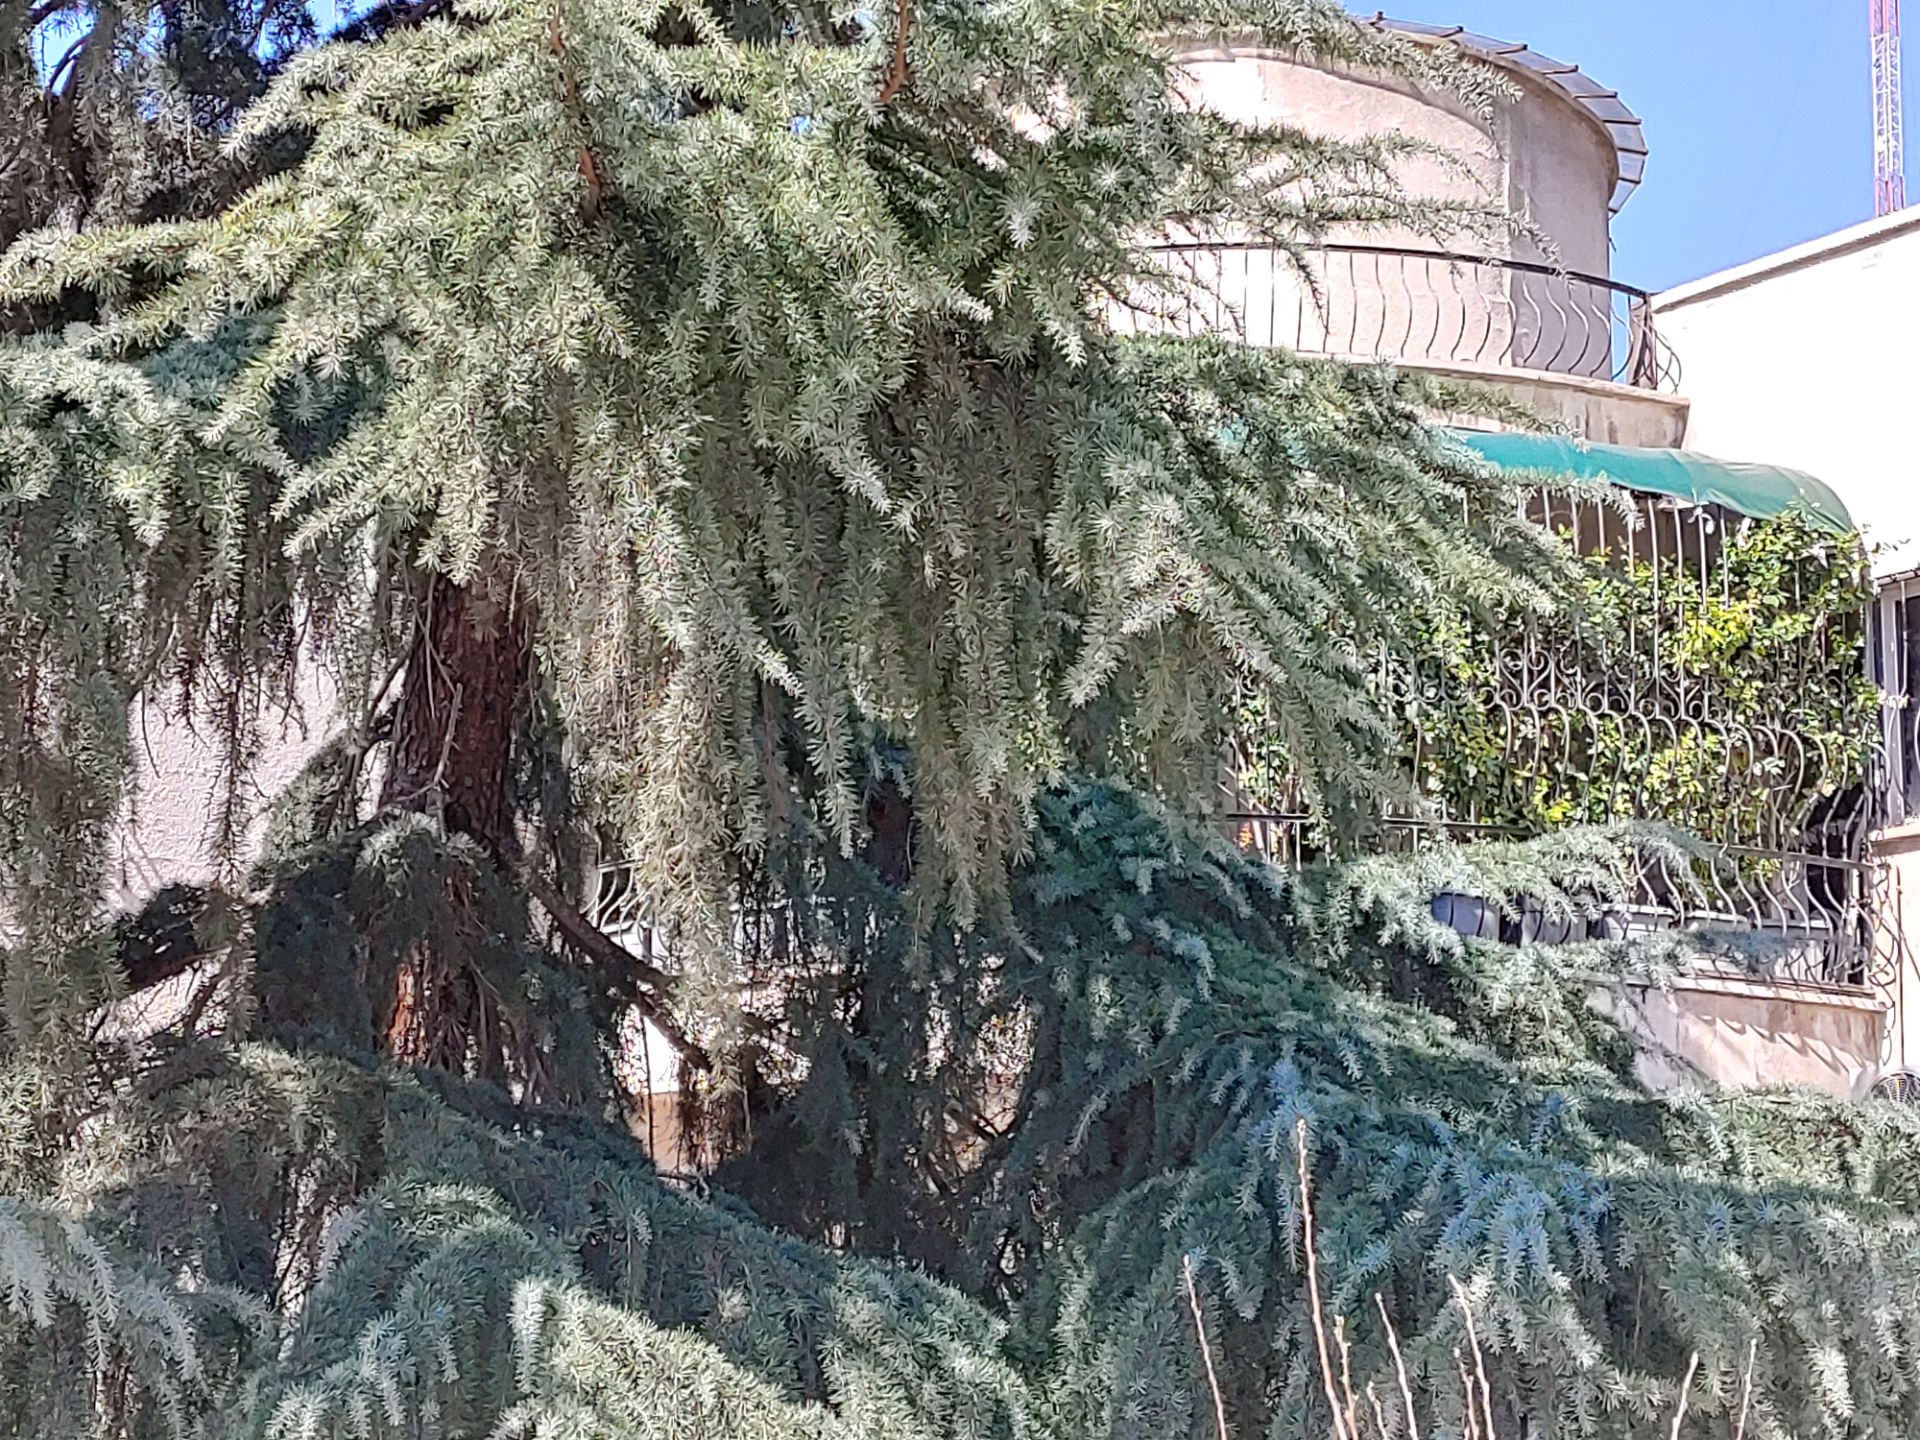 عکس نمونه دوربین واید ال جی ولوت در طول روز - درخت پارک آب و آتش